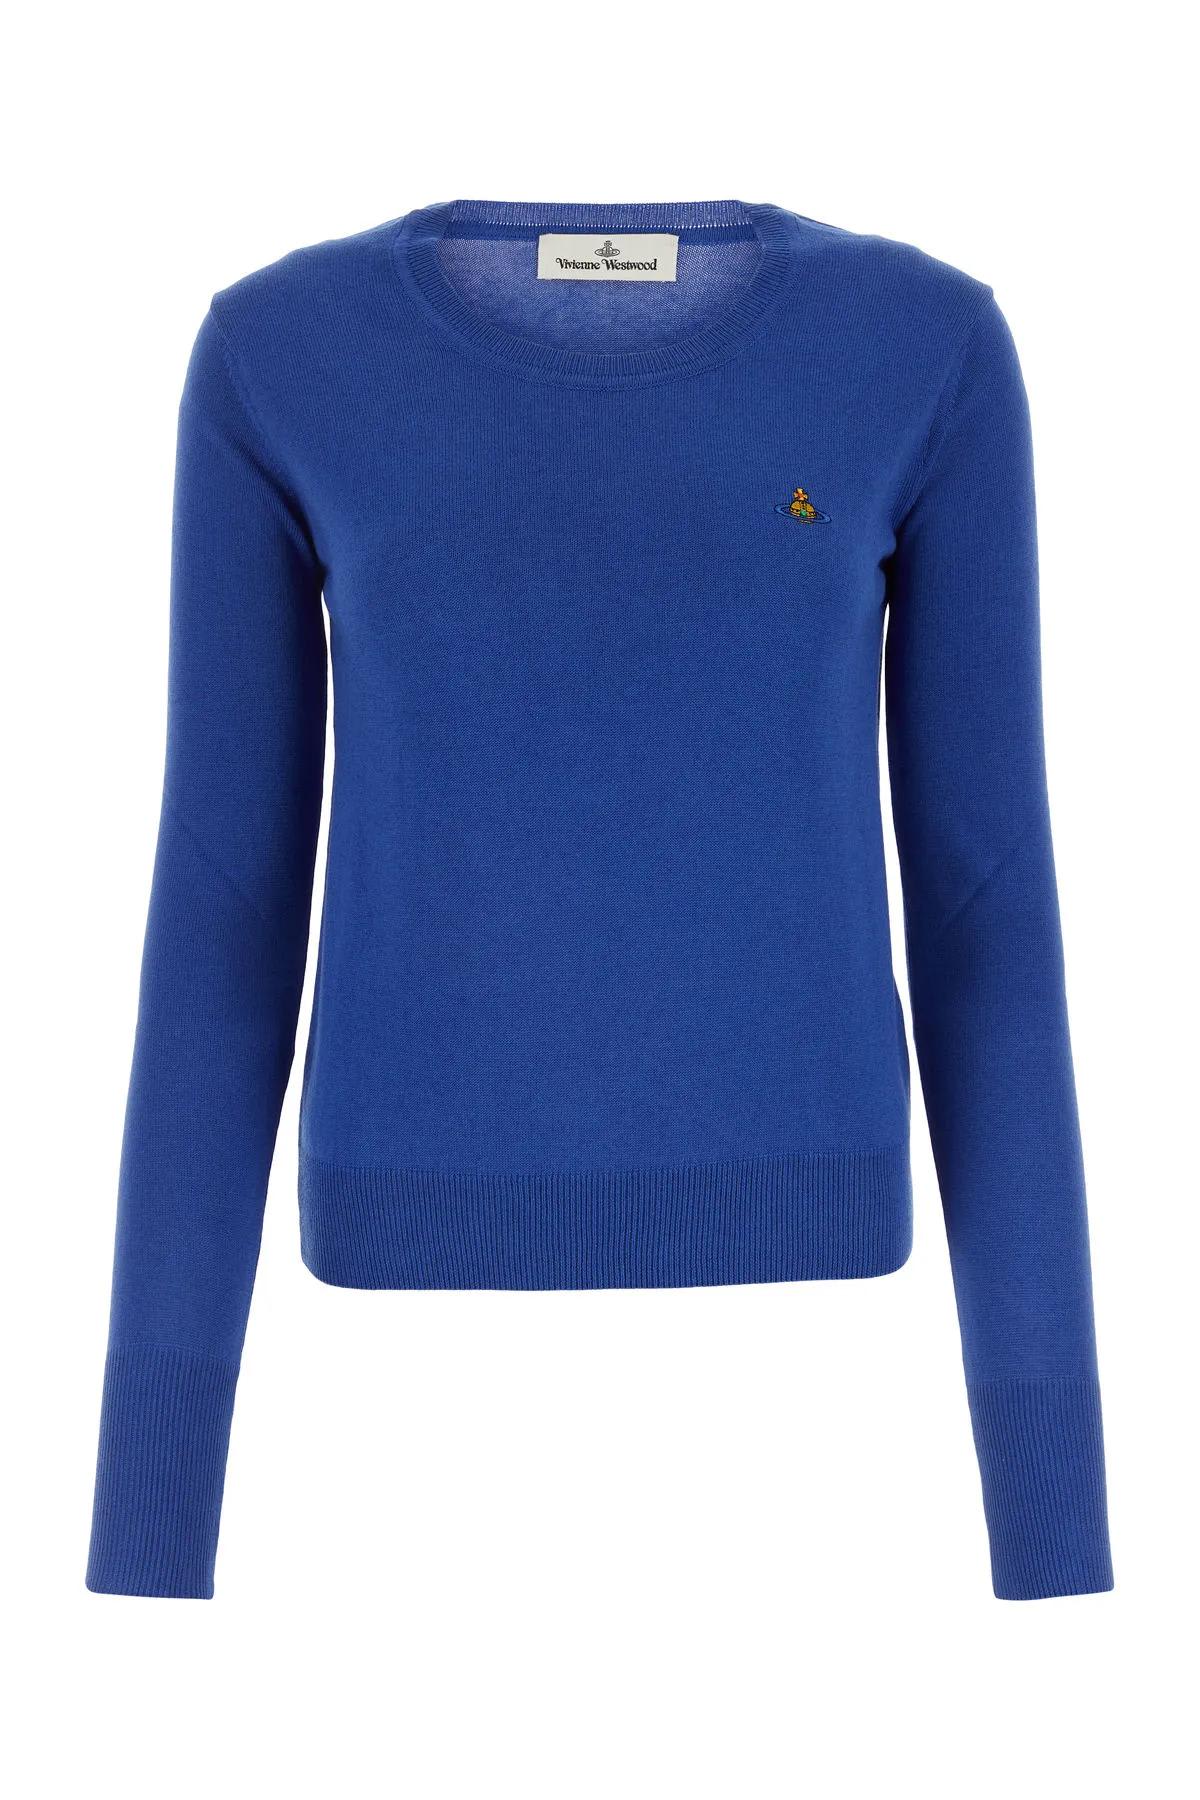 Shop Vivienne Westwood Electric Blue Cotton Blend Bea Sweater